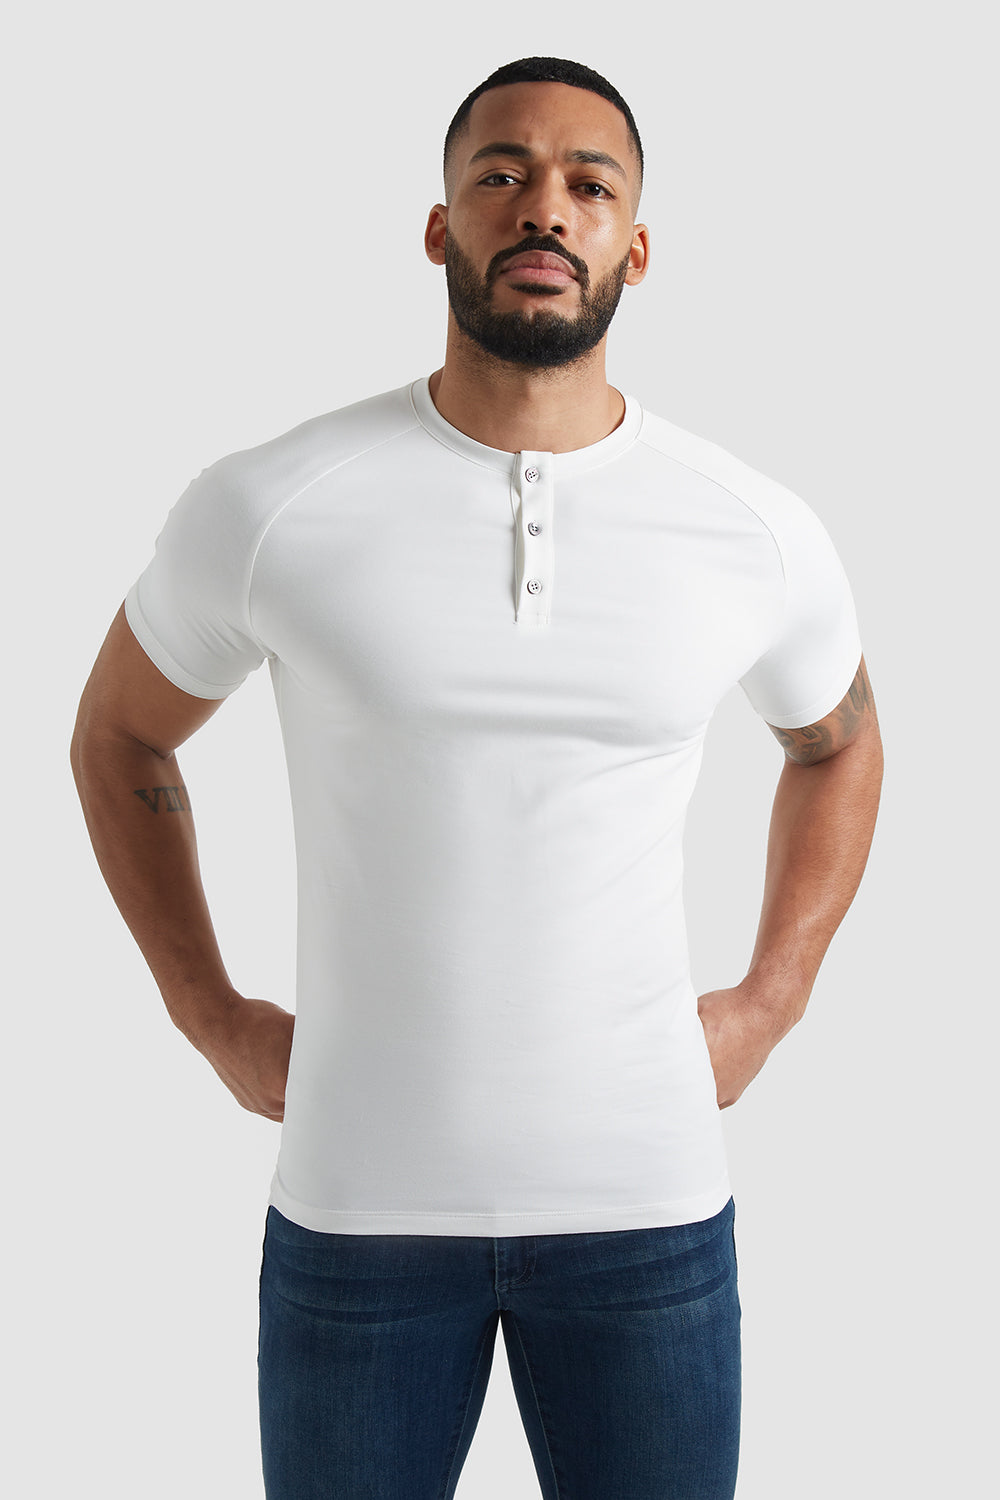 at føre forklædt Indskrive Everyday Henley T-shirt In White - TAILORED ATHLETE - USA